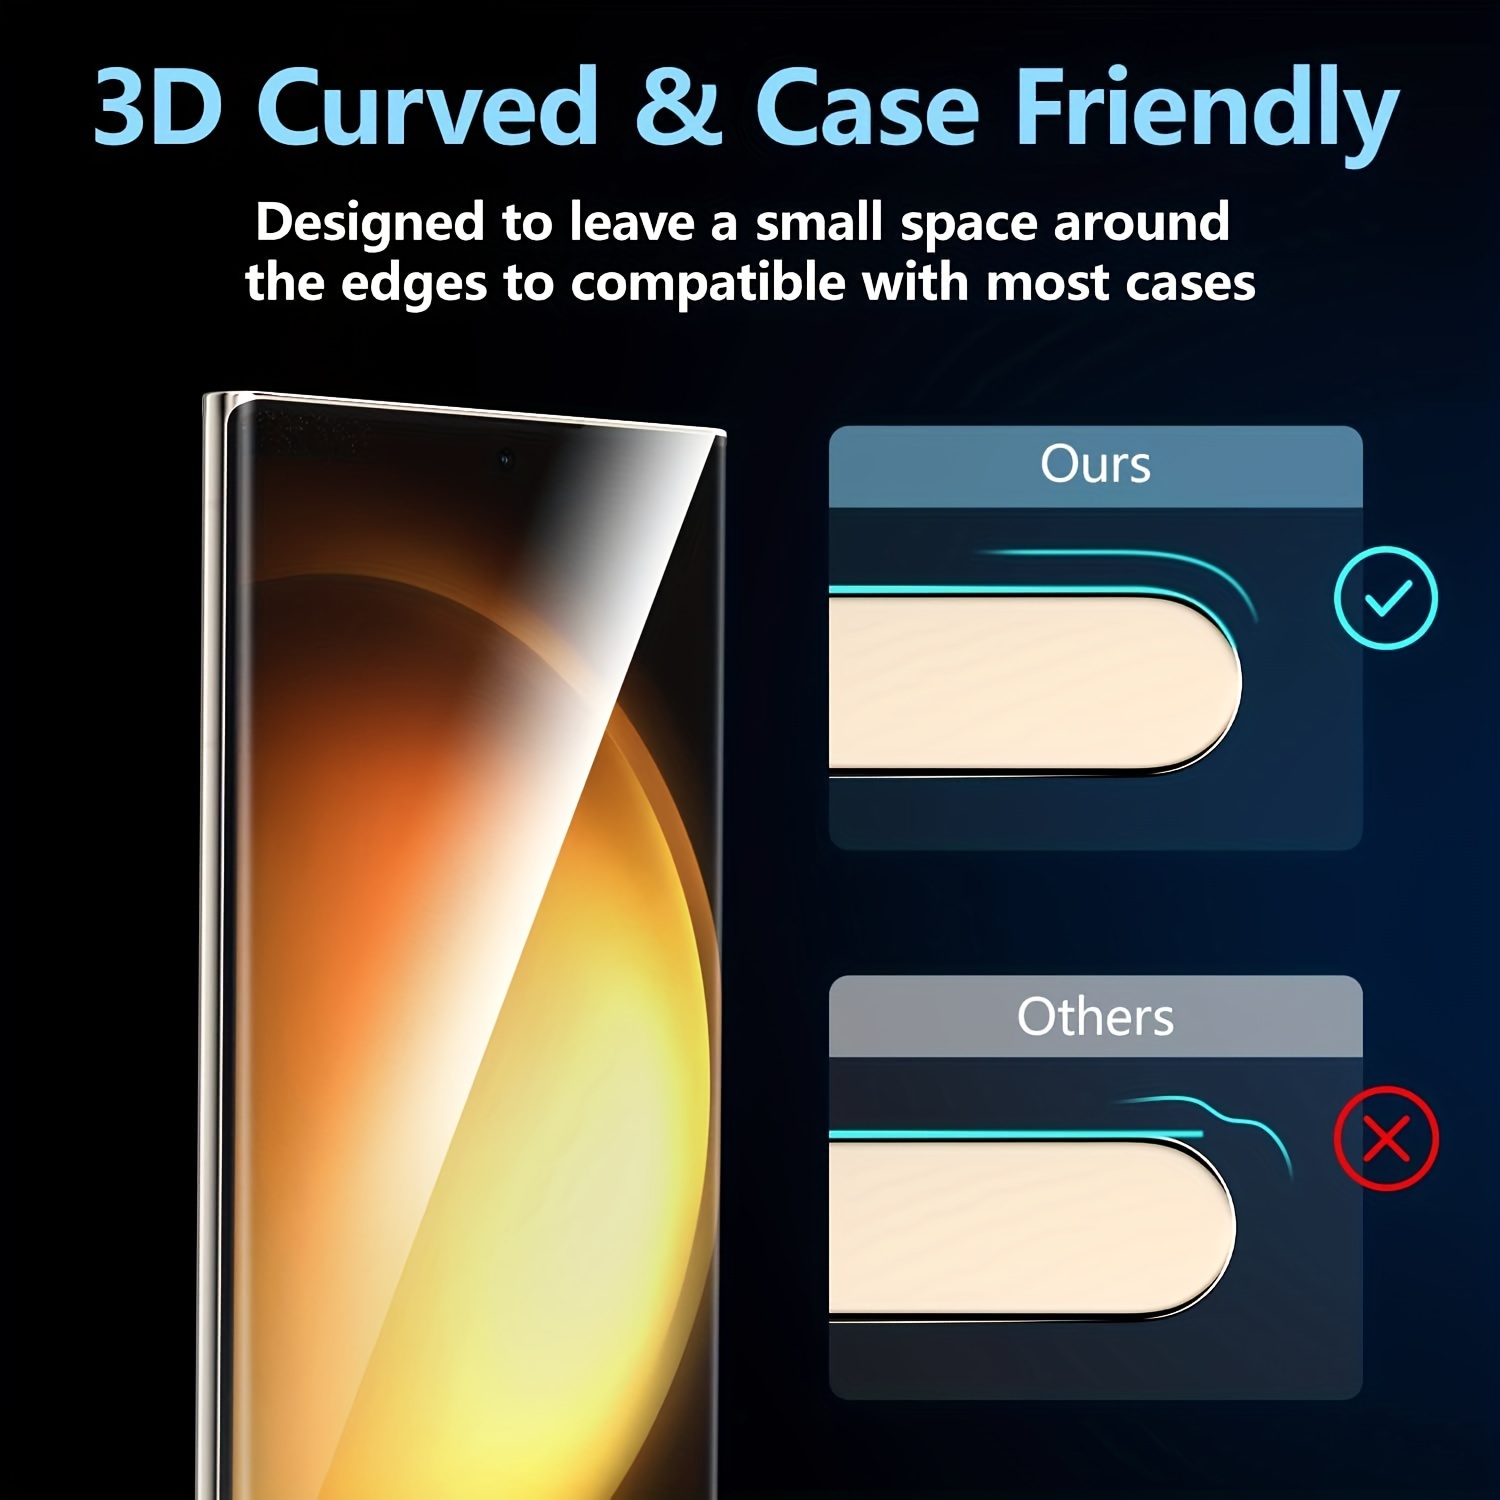 2 Protector de Pantalla Vidrio Templado Privacidad Para Samsung Galaxy S23  Ultra